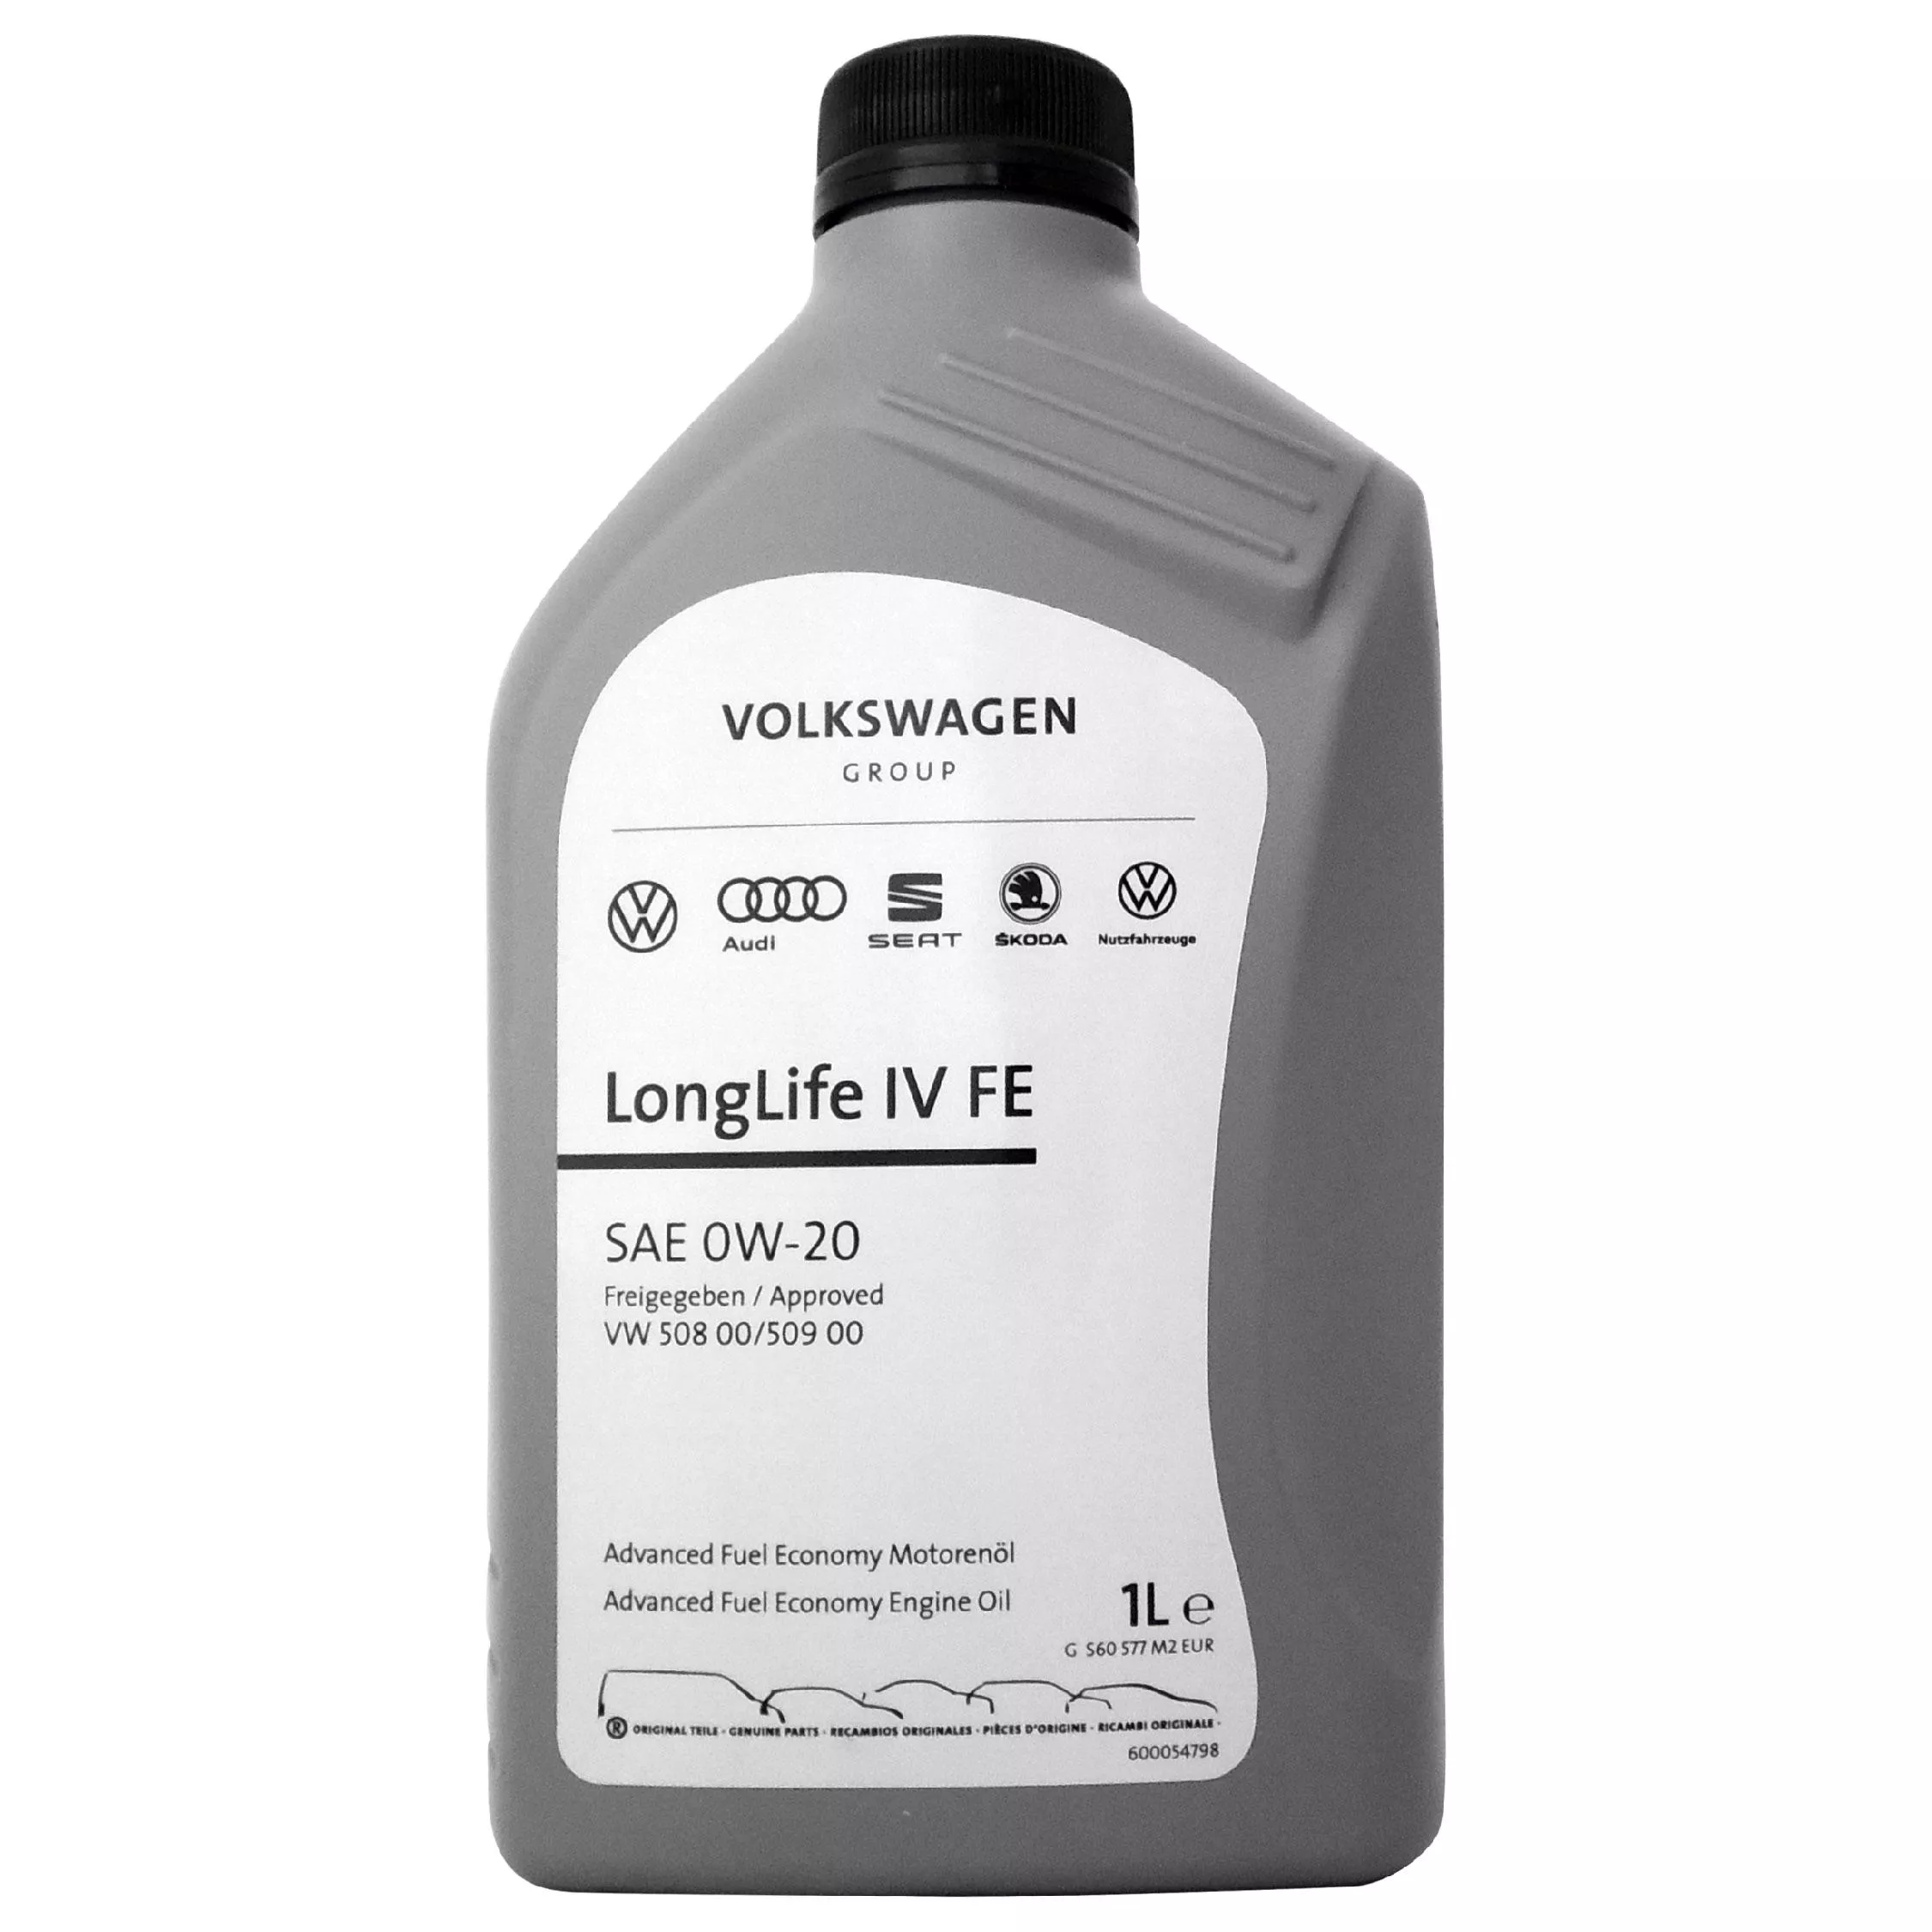 福斯 奧迪 VW Longlife IV SAE 0W20 長效全合成機油 原廠機油